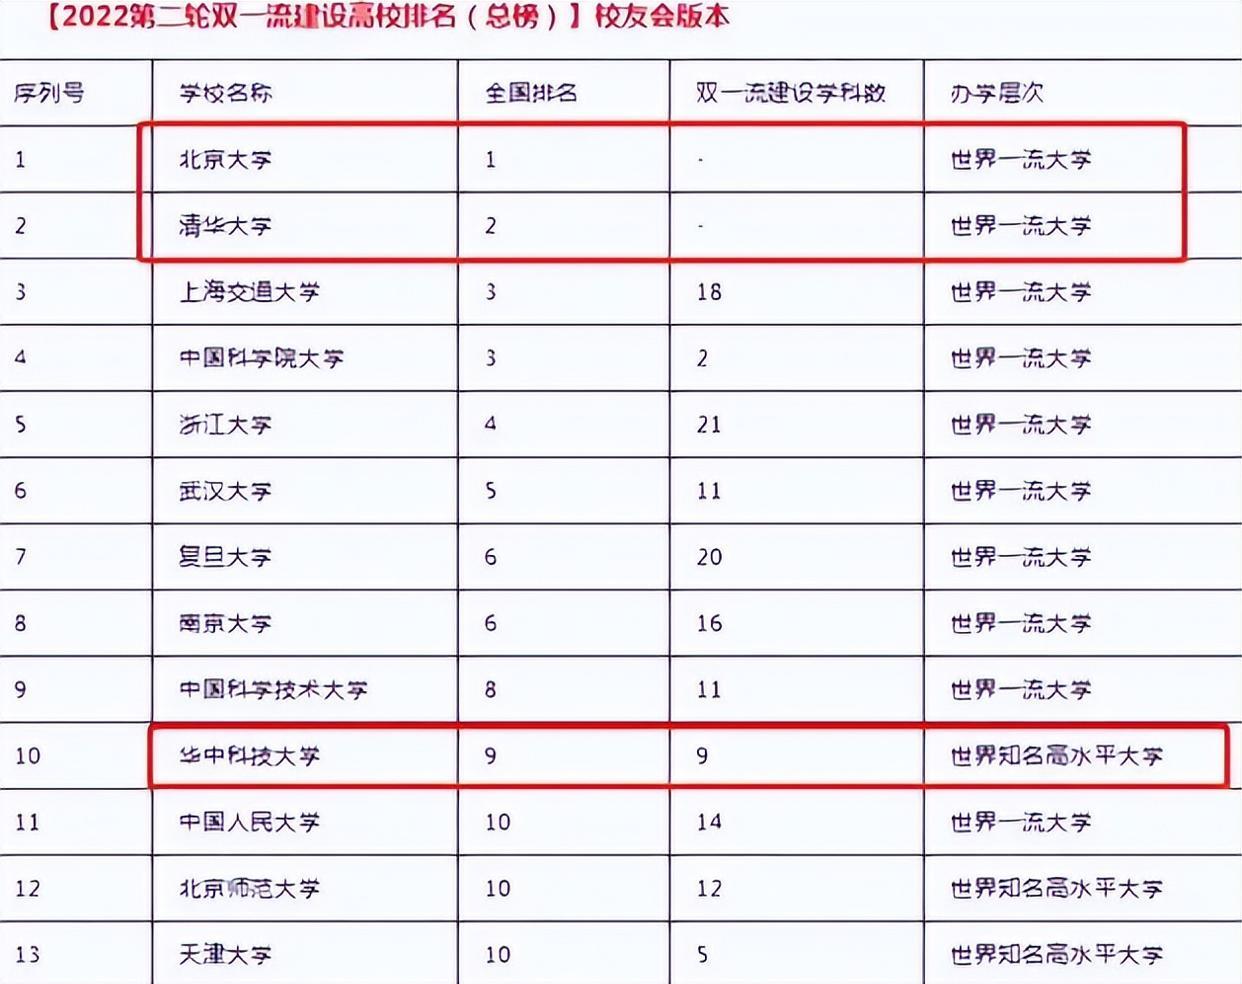 2022双一流高校排名更新, 上海交大不负众望, 复旦大学排在第六